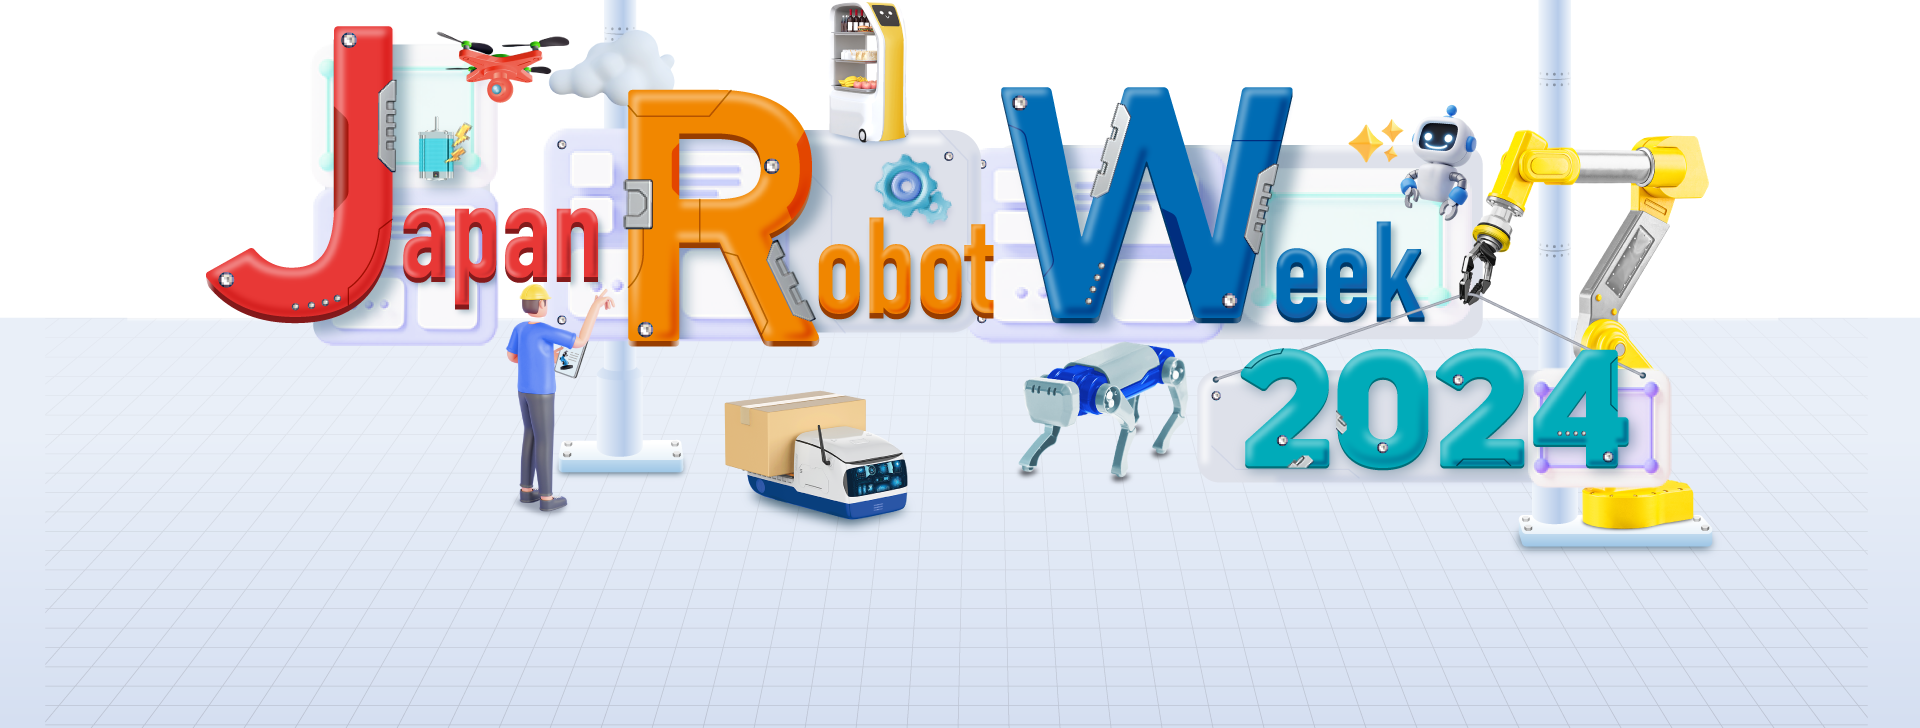 Japan Robot Week 2004